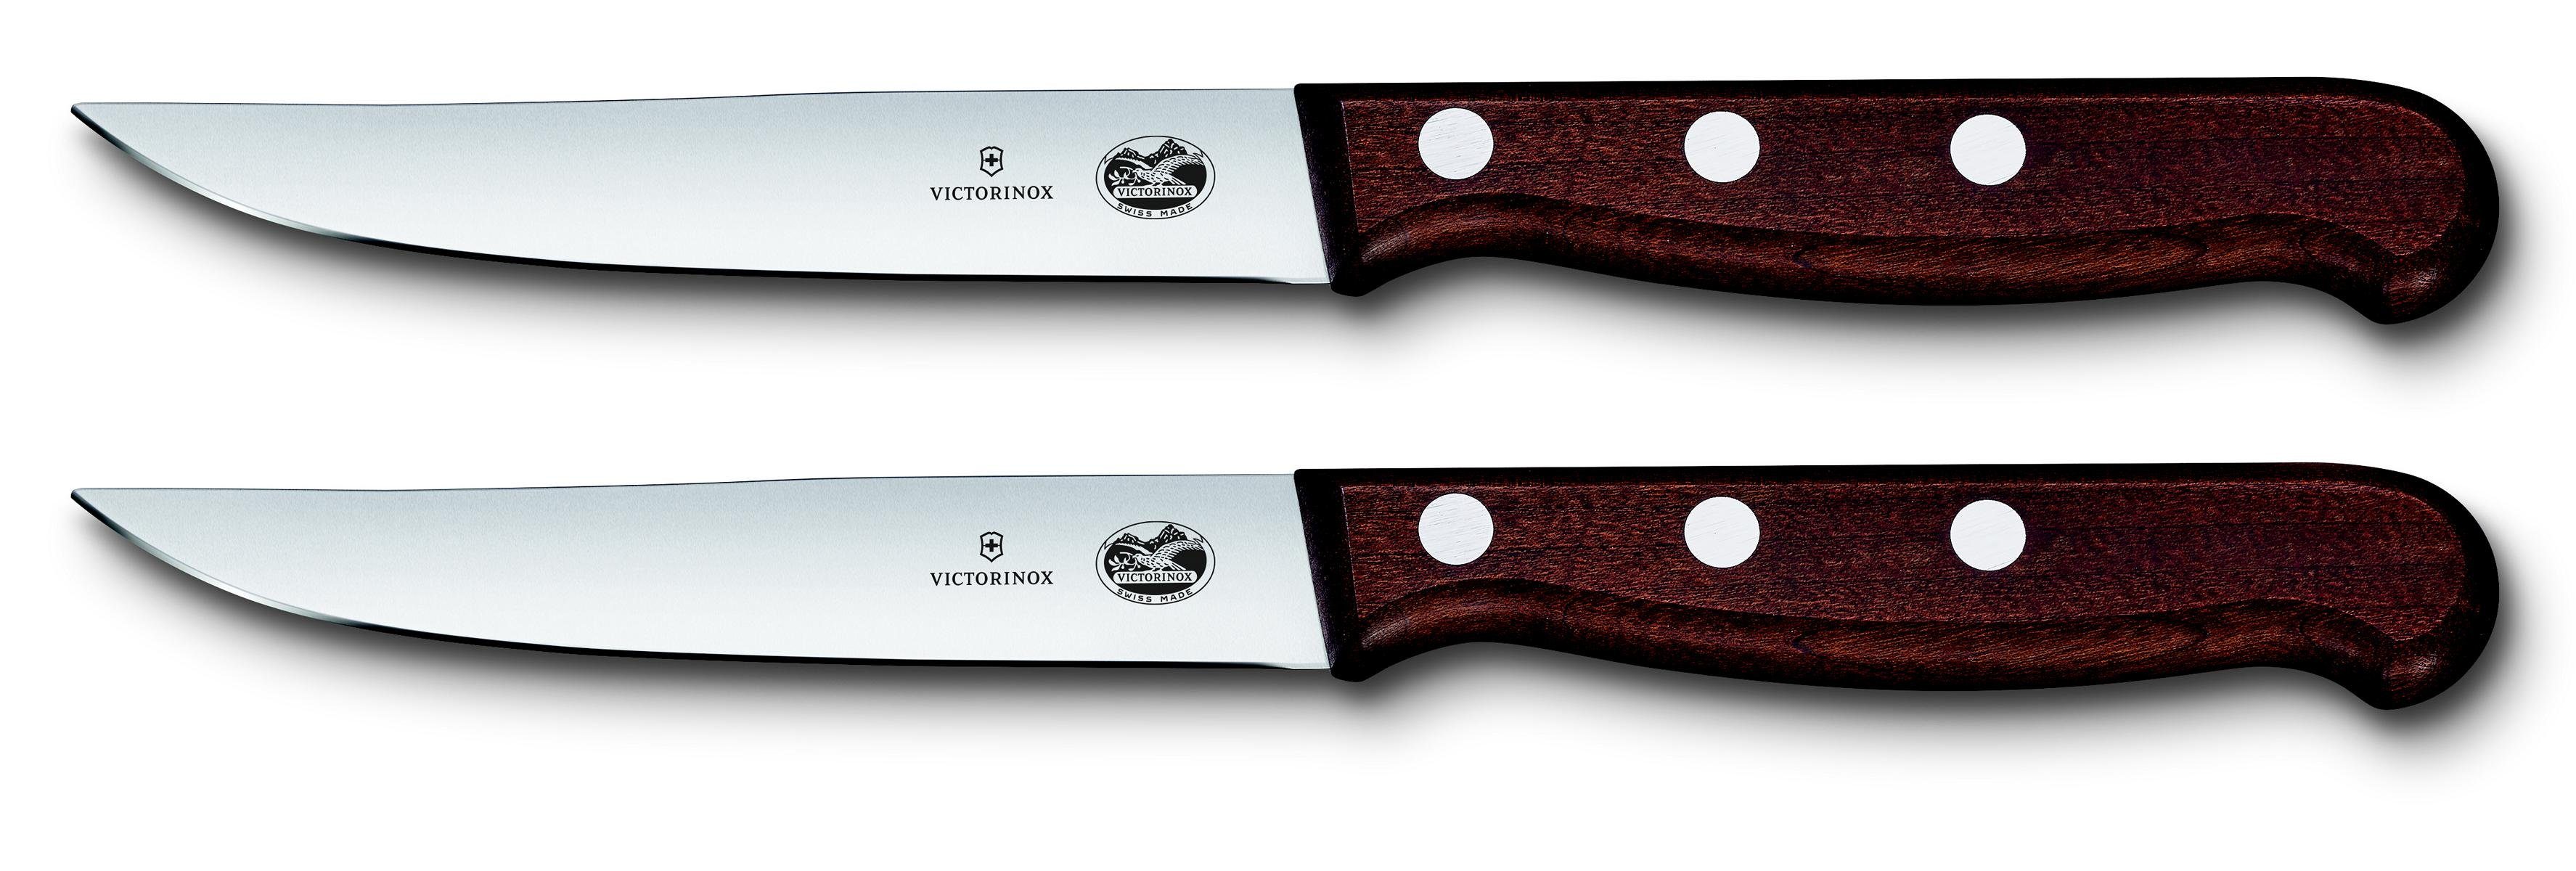 Victorinox Taschenmesser Steakmesser-Set, mod Ahornholz, Schliff,12 cm,2-teilig,Gesch. ger